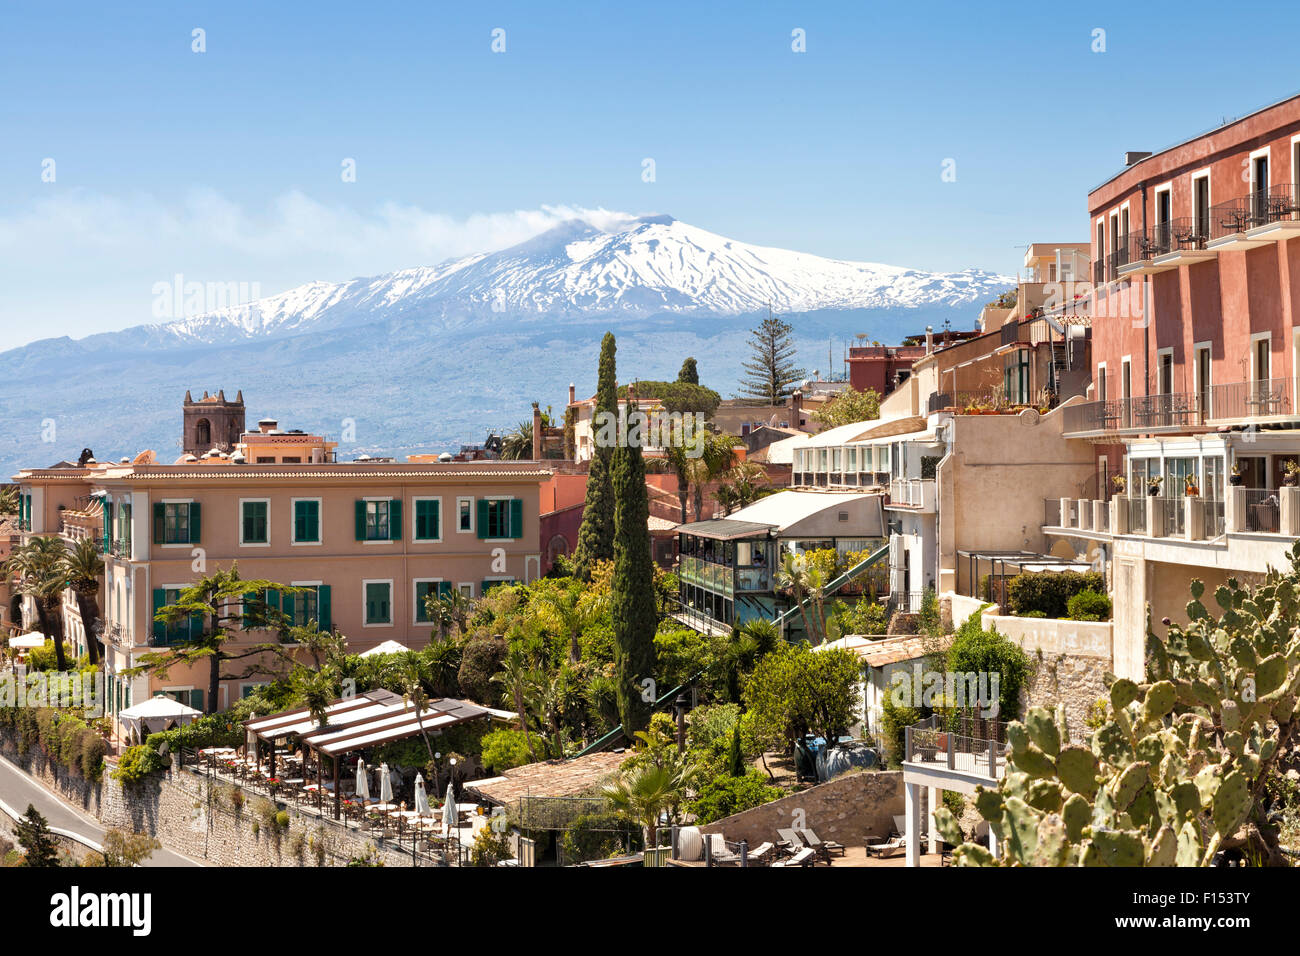 Vue panoramique de la ville sicilienne historique de Taormine, à l'arrière-plan avec le pic blanc du volcan Etna avec de la fumée sur Hot spring Banque D'Images